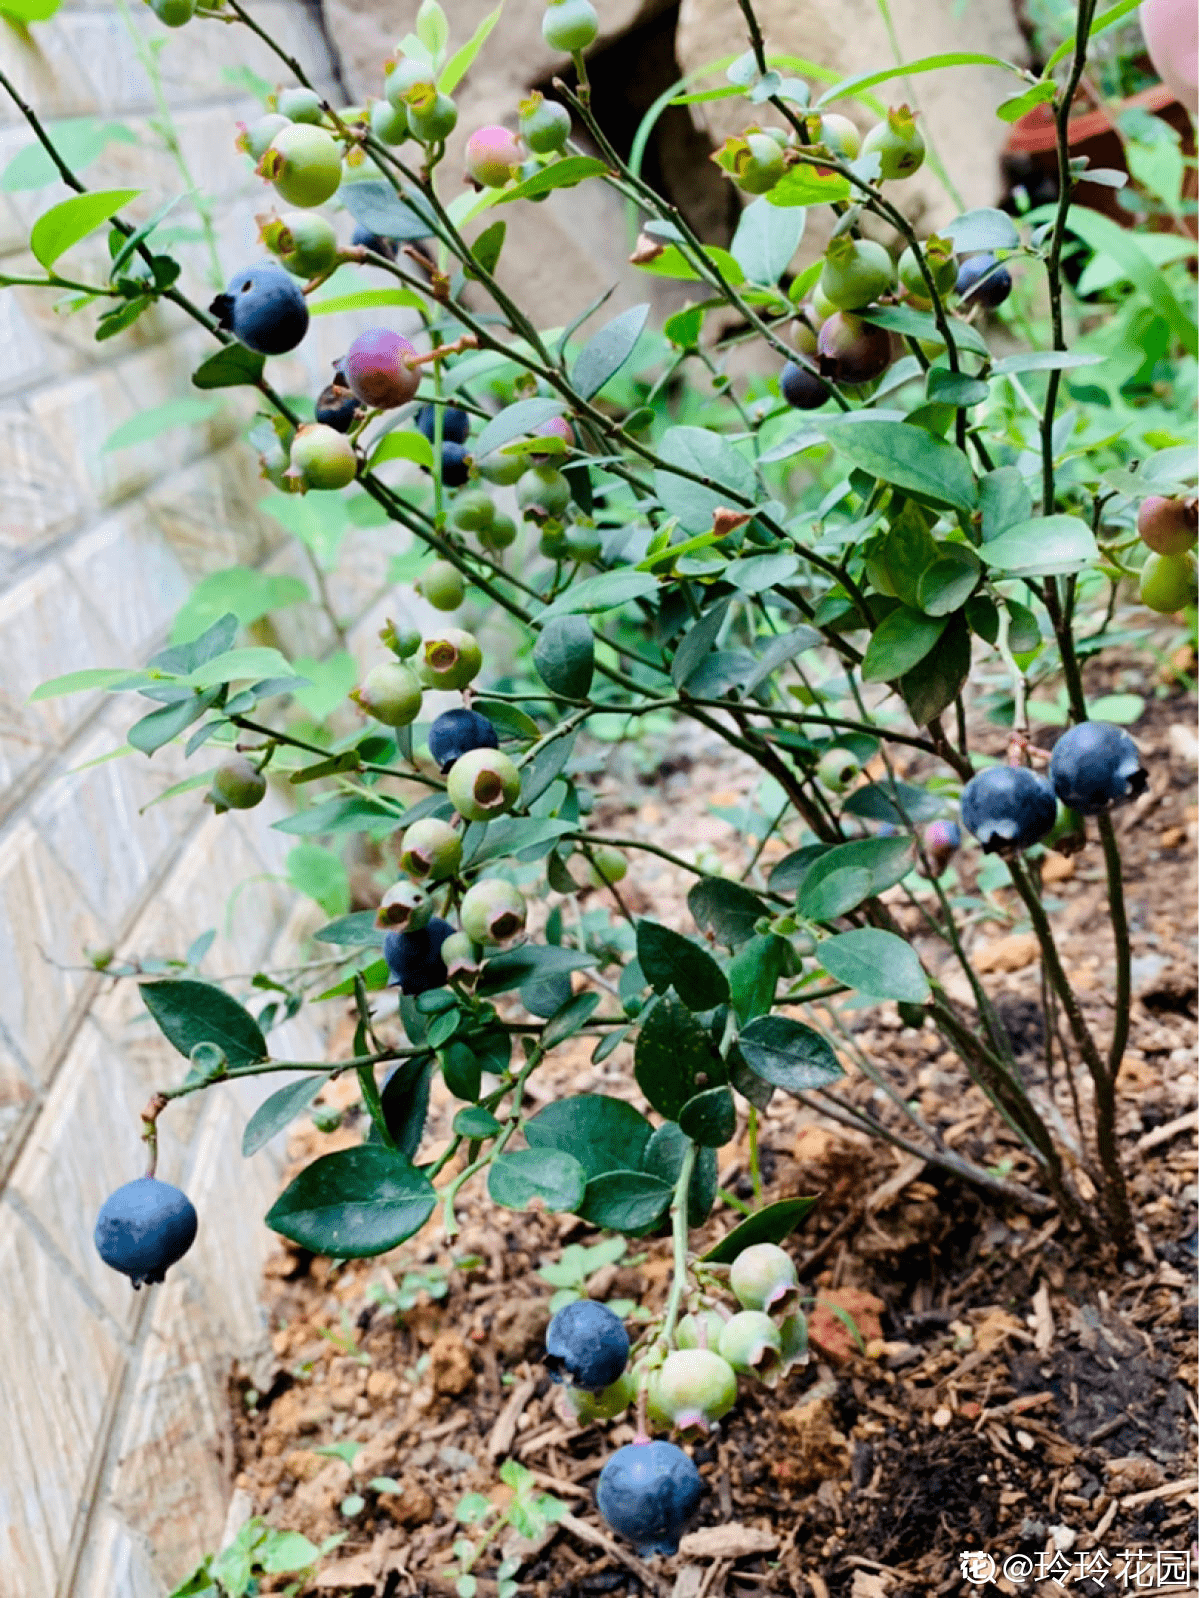 但最重要的是蓝莓一定要在酸性的土壤里生长,否则蓝莓不能很好的开花